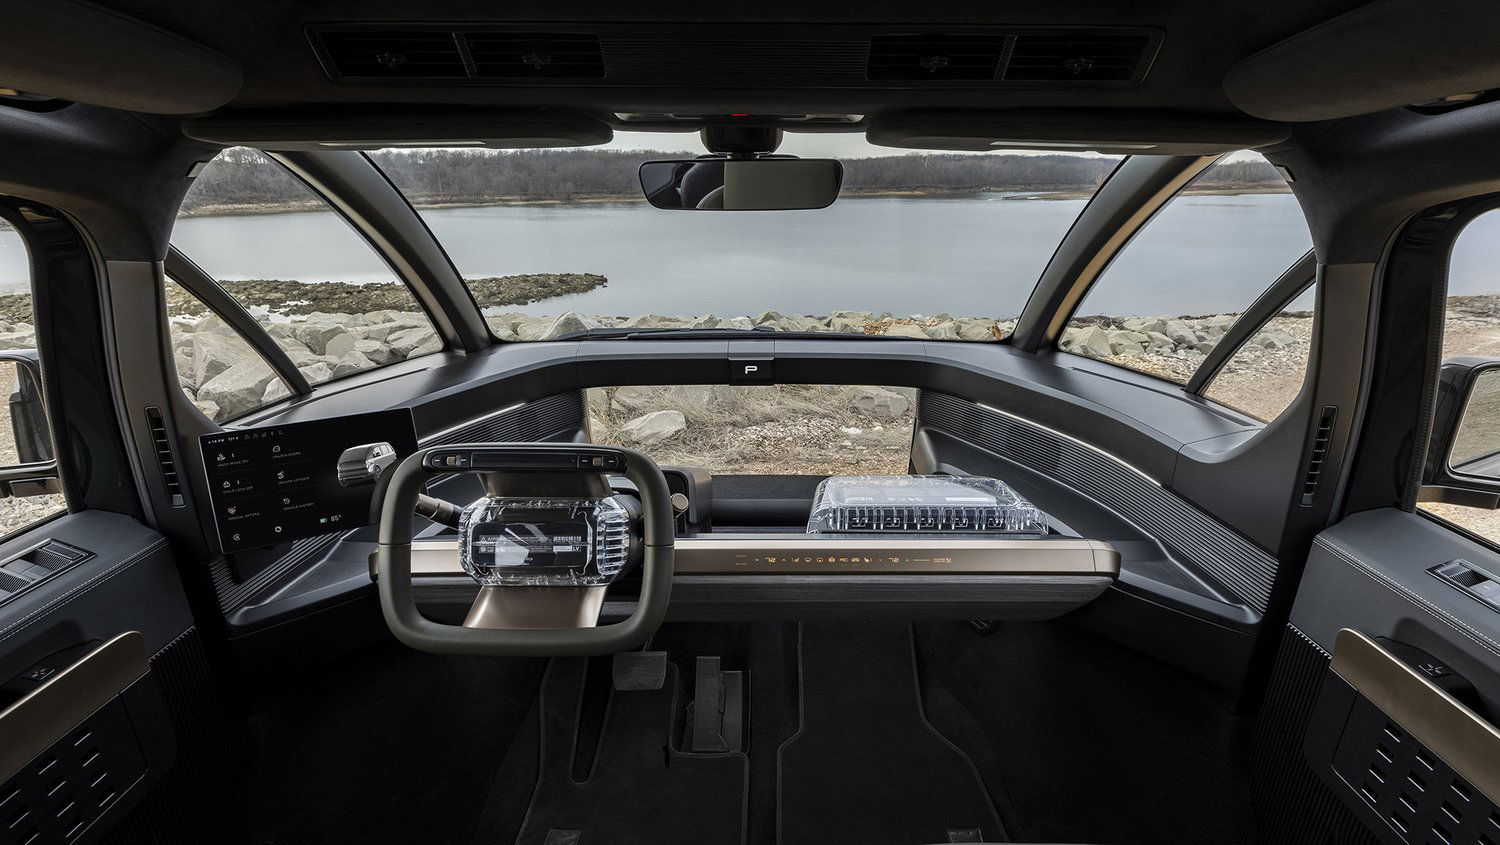 Canoo lifestyle vehicle interior.